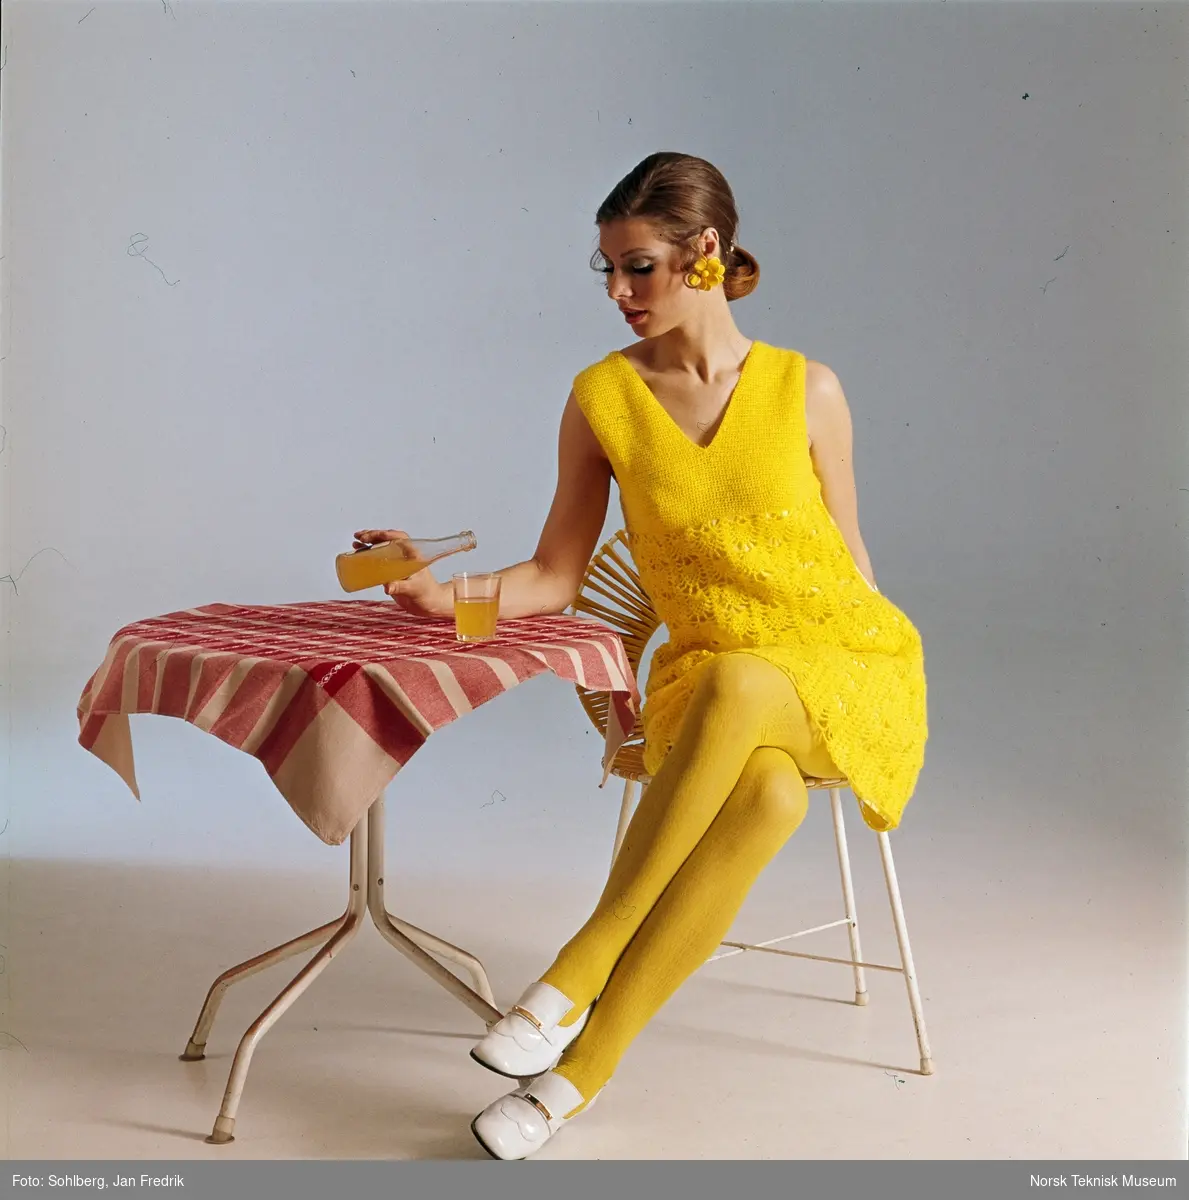 En kvinne i gul kjole og gule strømpebukser, sitter ved et kafebord. På bordet står det en flaske og et glass med gul brus.